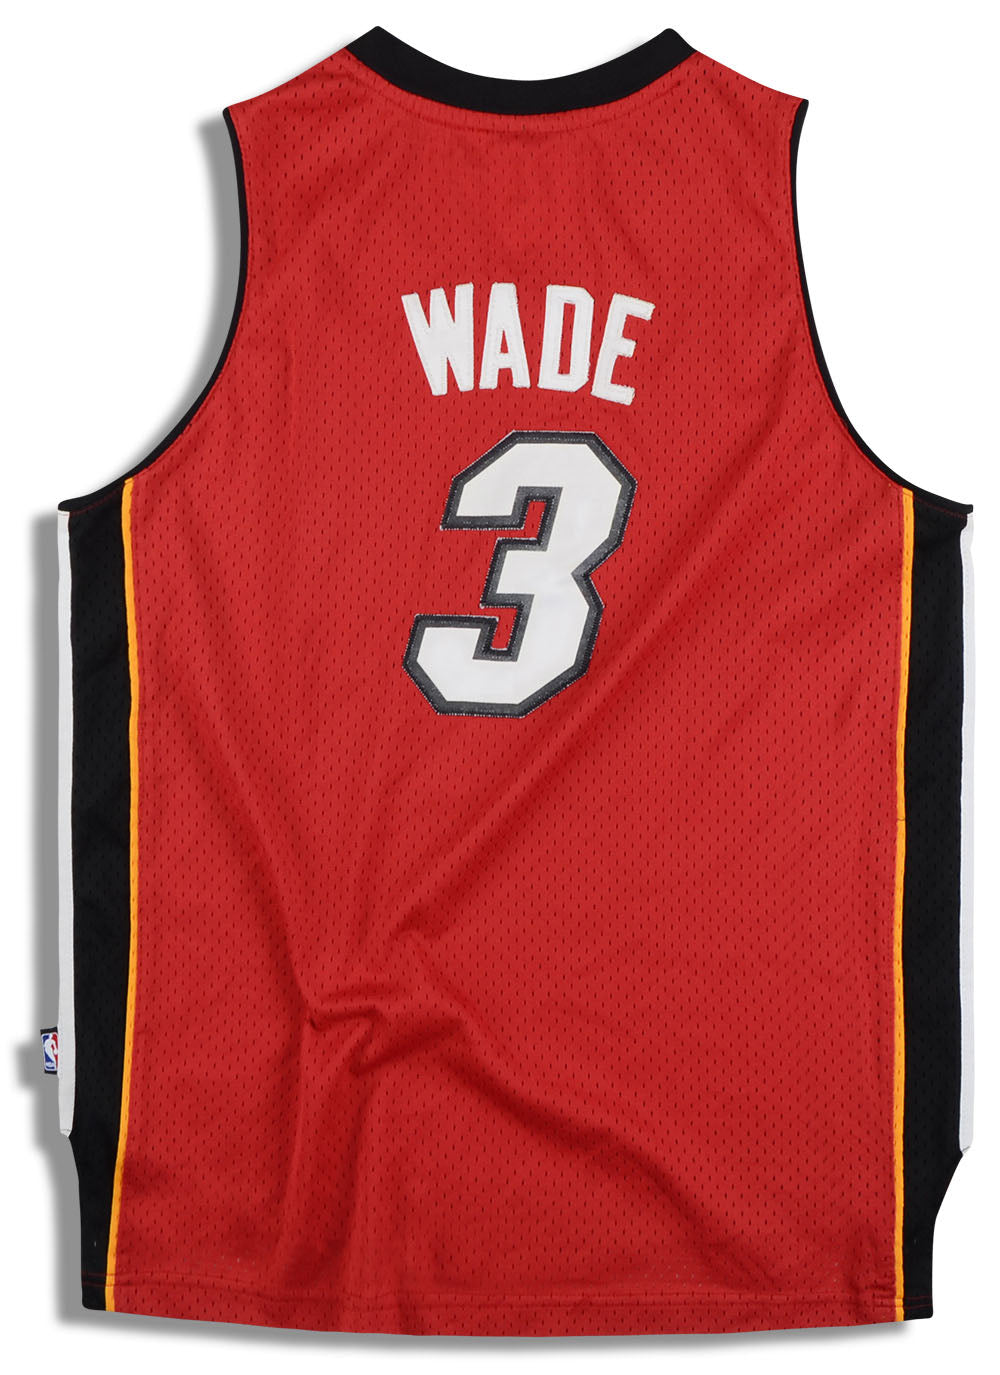 Dwyane Wade Jerseys, Dwyane Wade Shirts, Merchandise, Gear